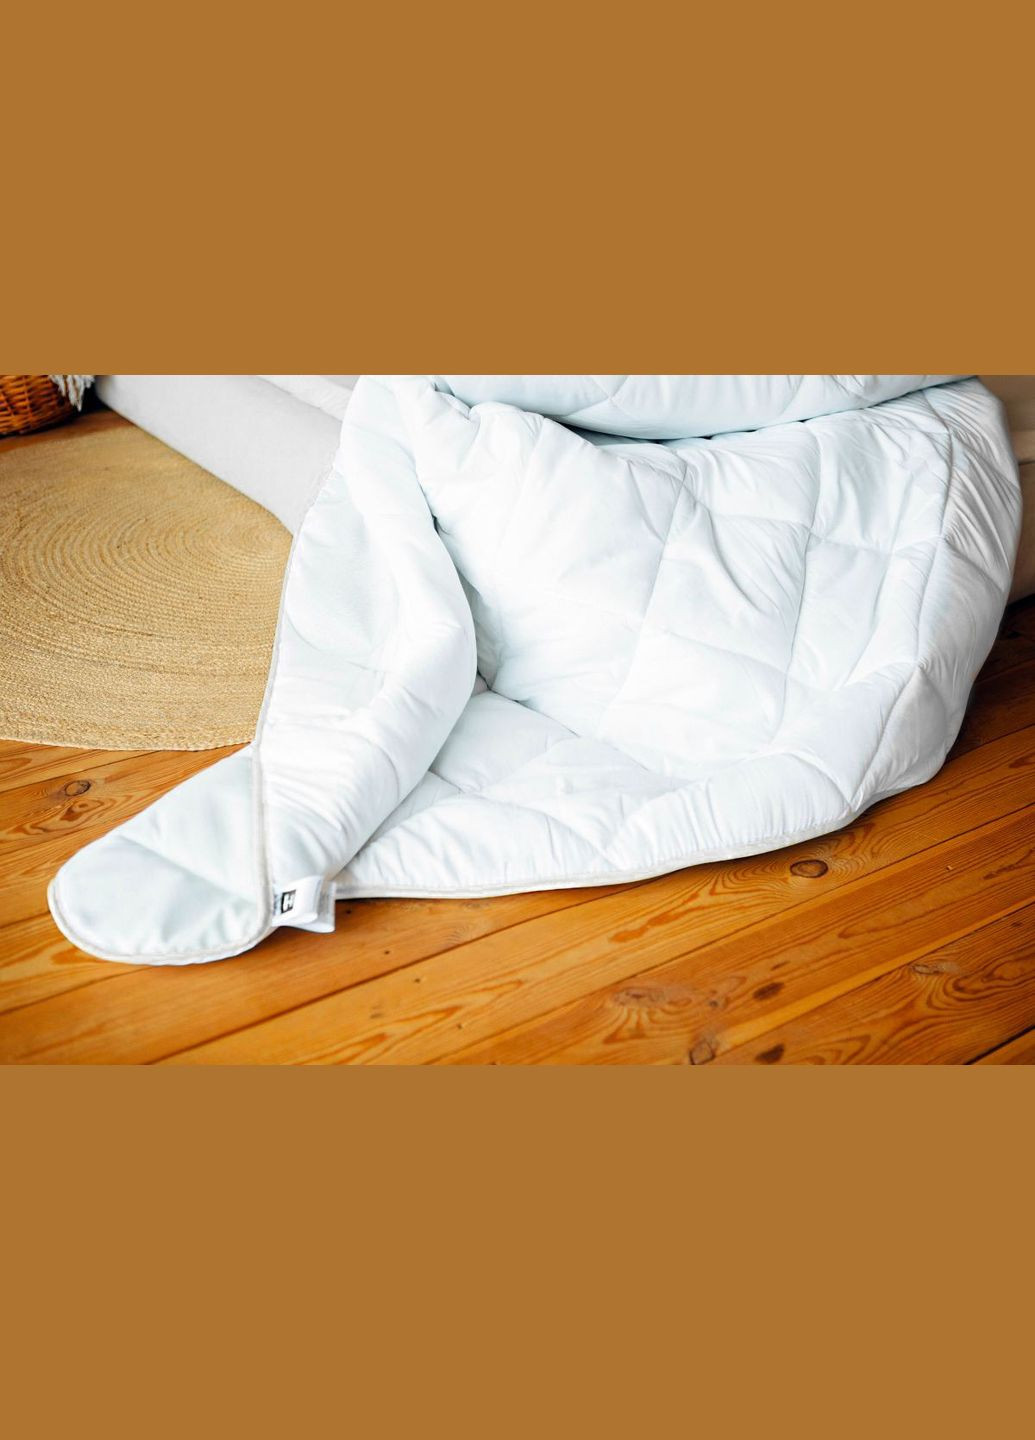 Одеяло антиаллергенное №1651 Eco Light White с эвкалиптовым волокном Всесезонное 110х140 (2200002653275) Mirson (293655556)